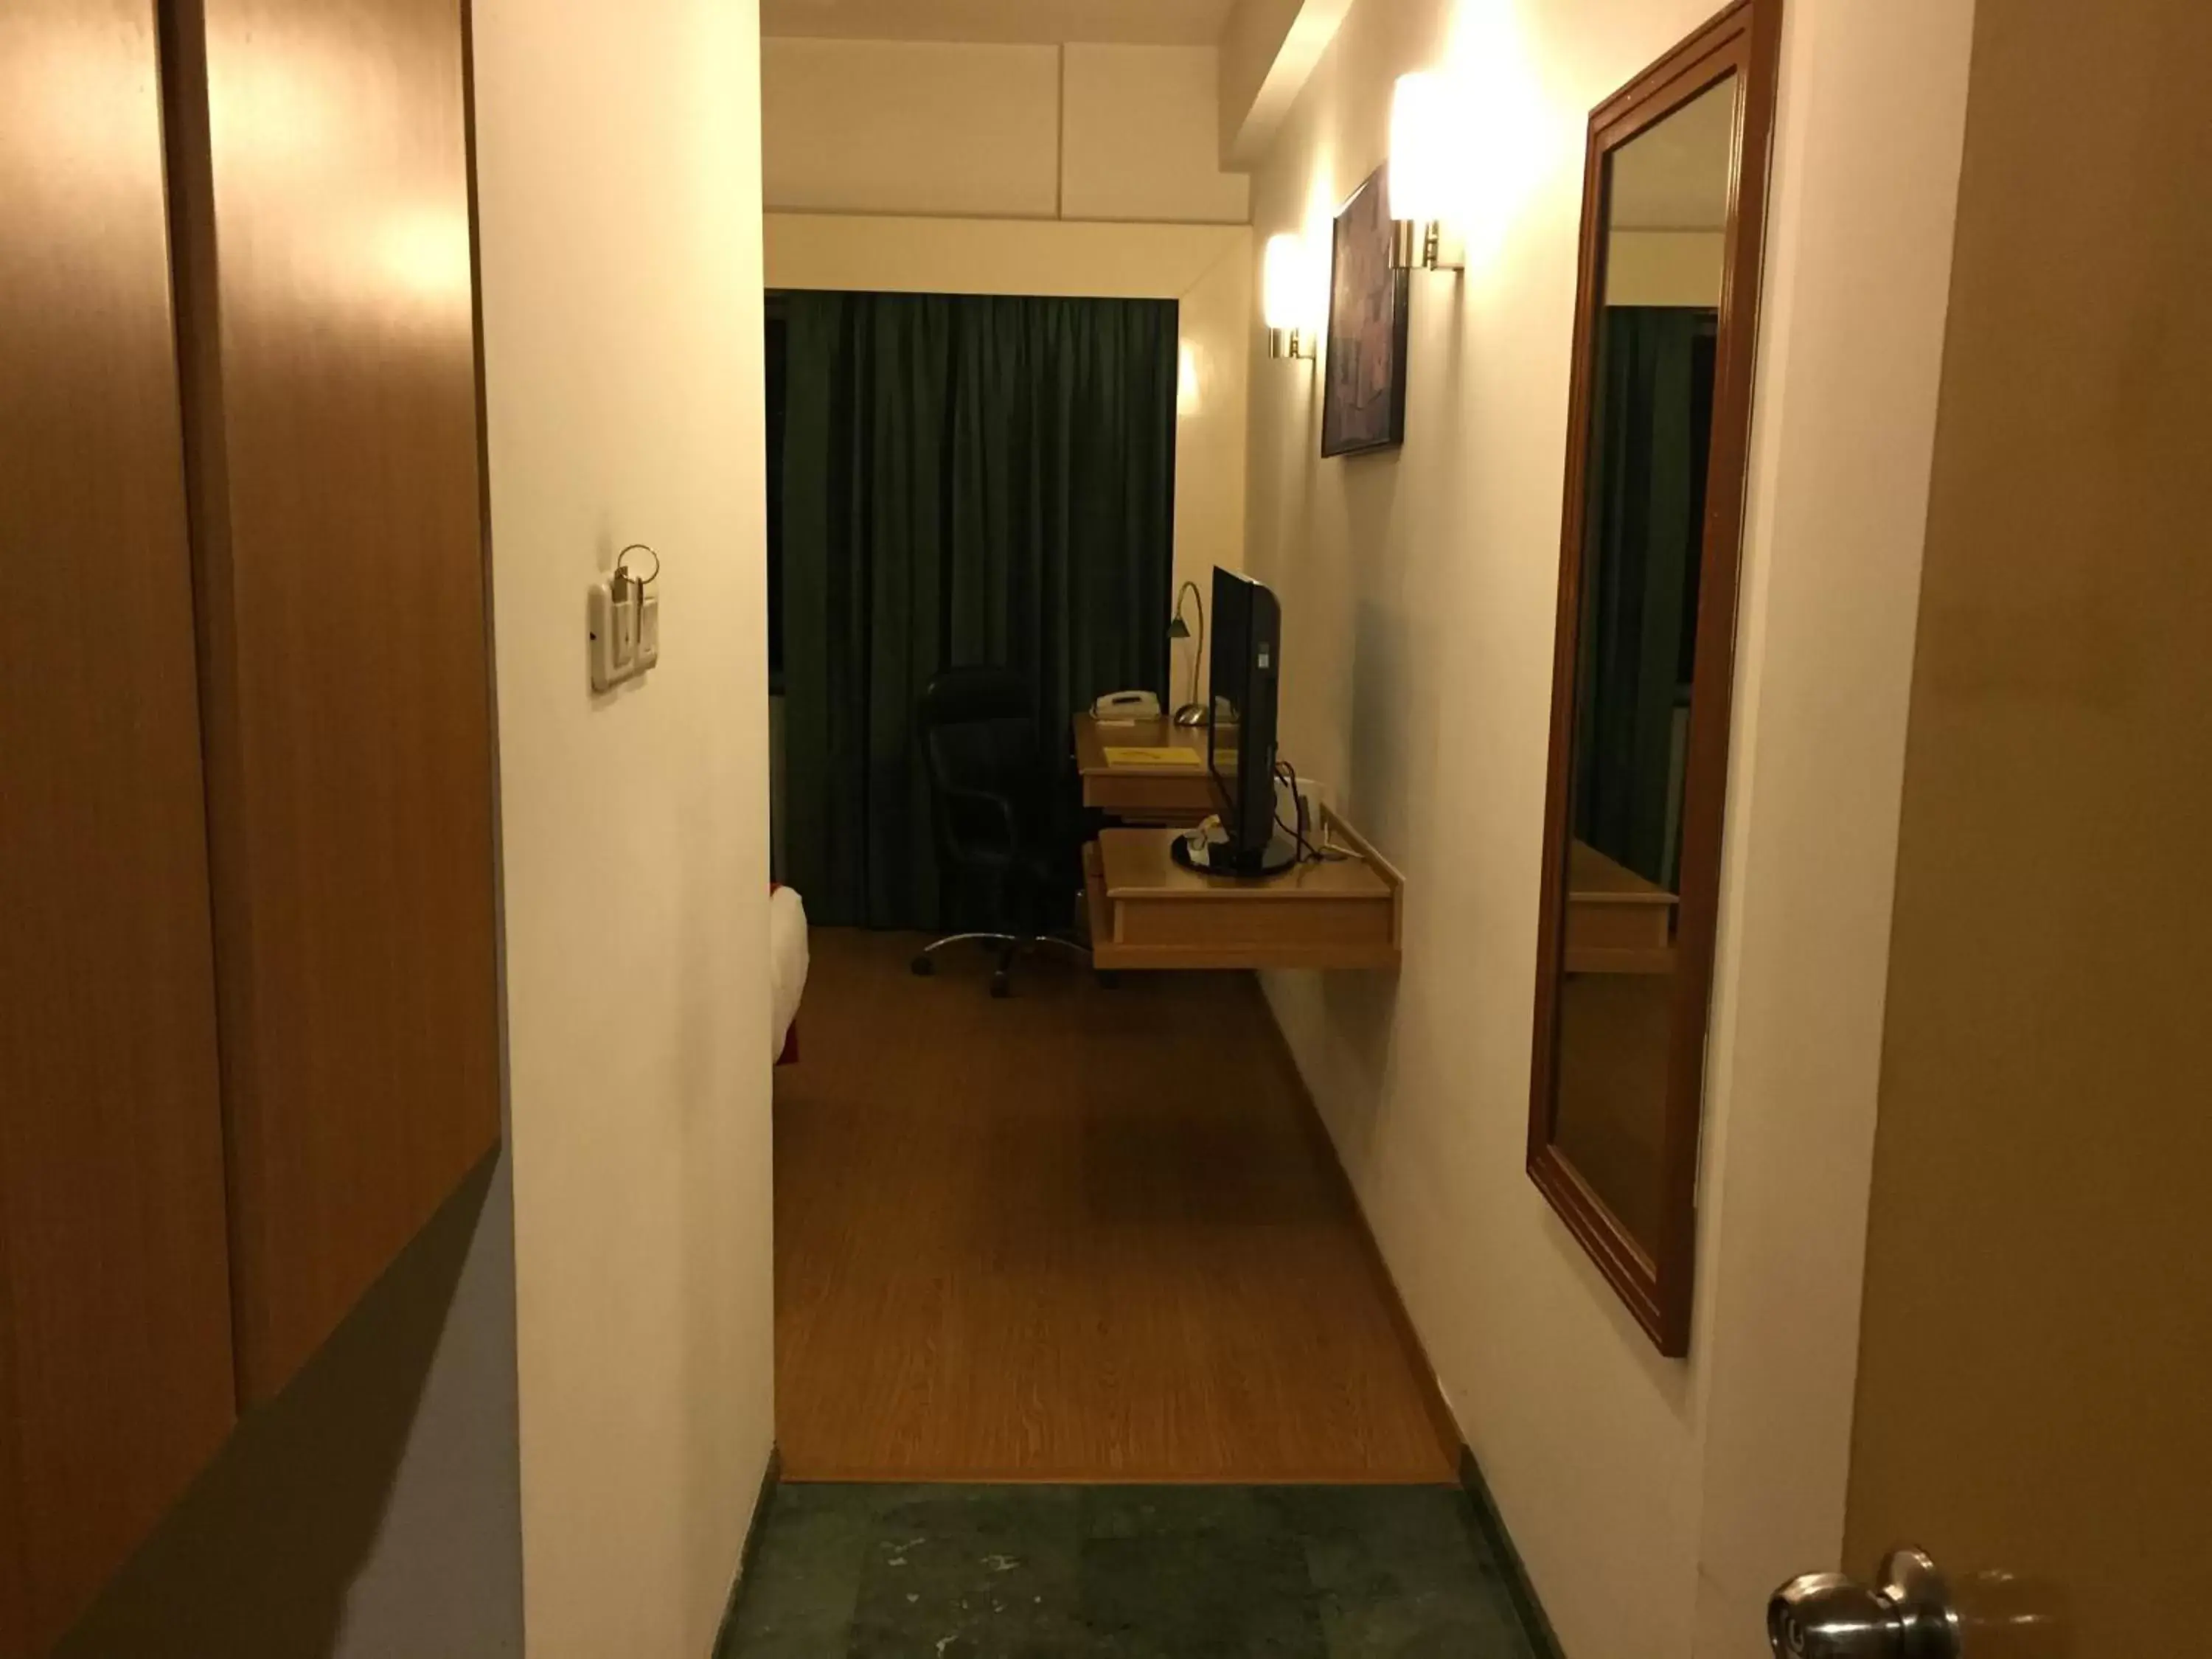 Bedroom, Bathroom in Lemon Tree Hotel Hinjewadi Pune